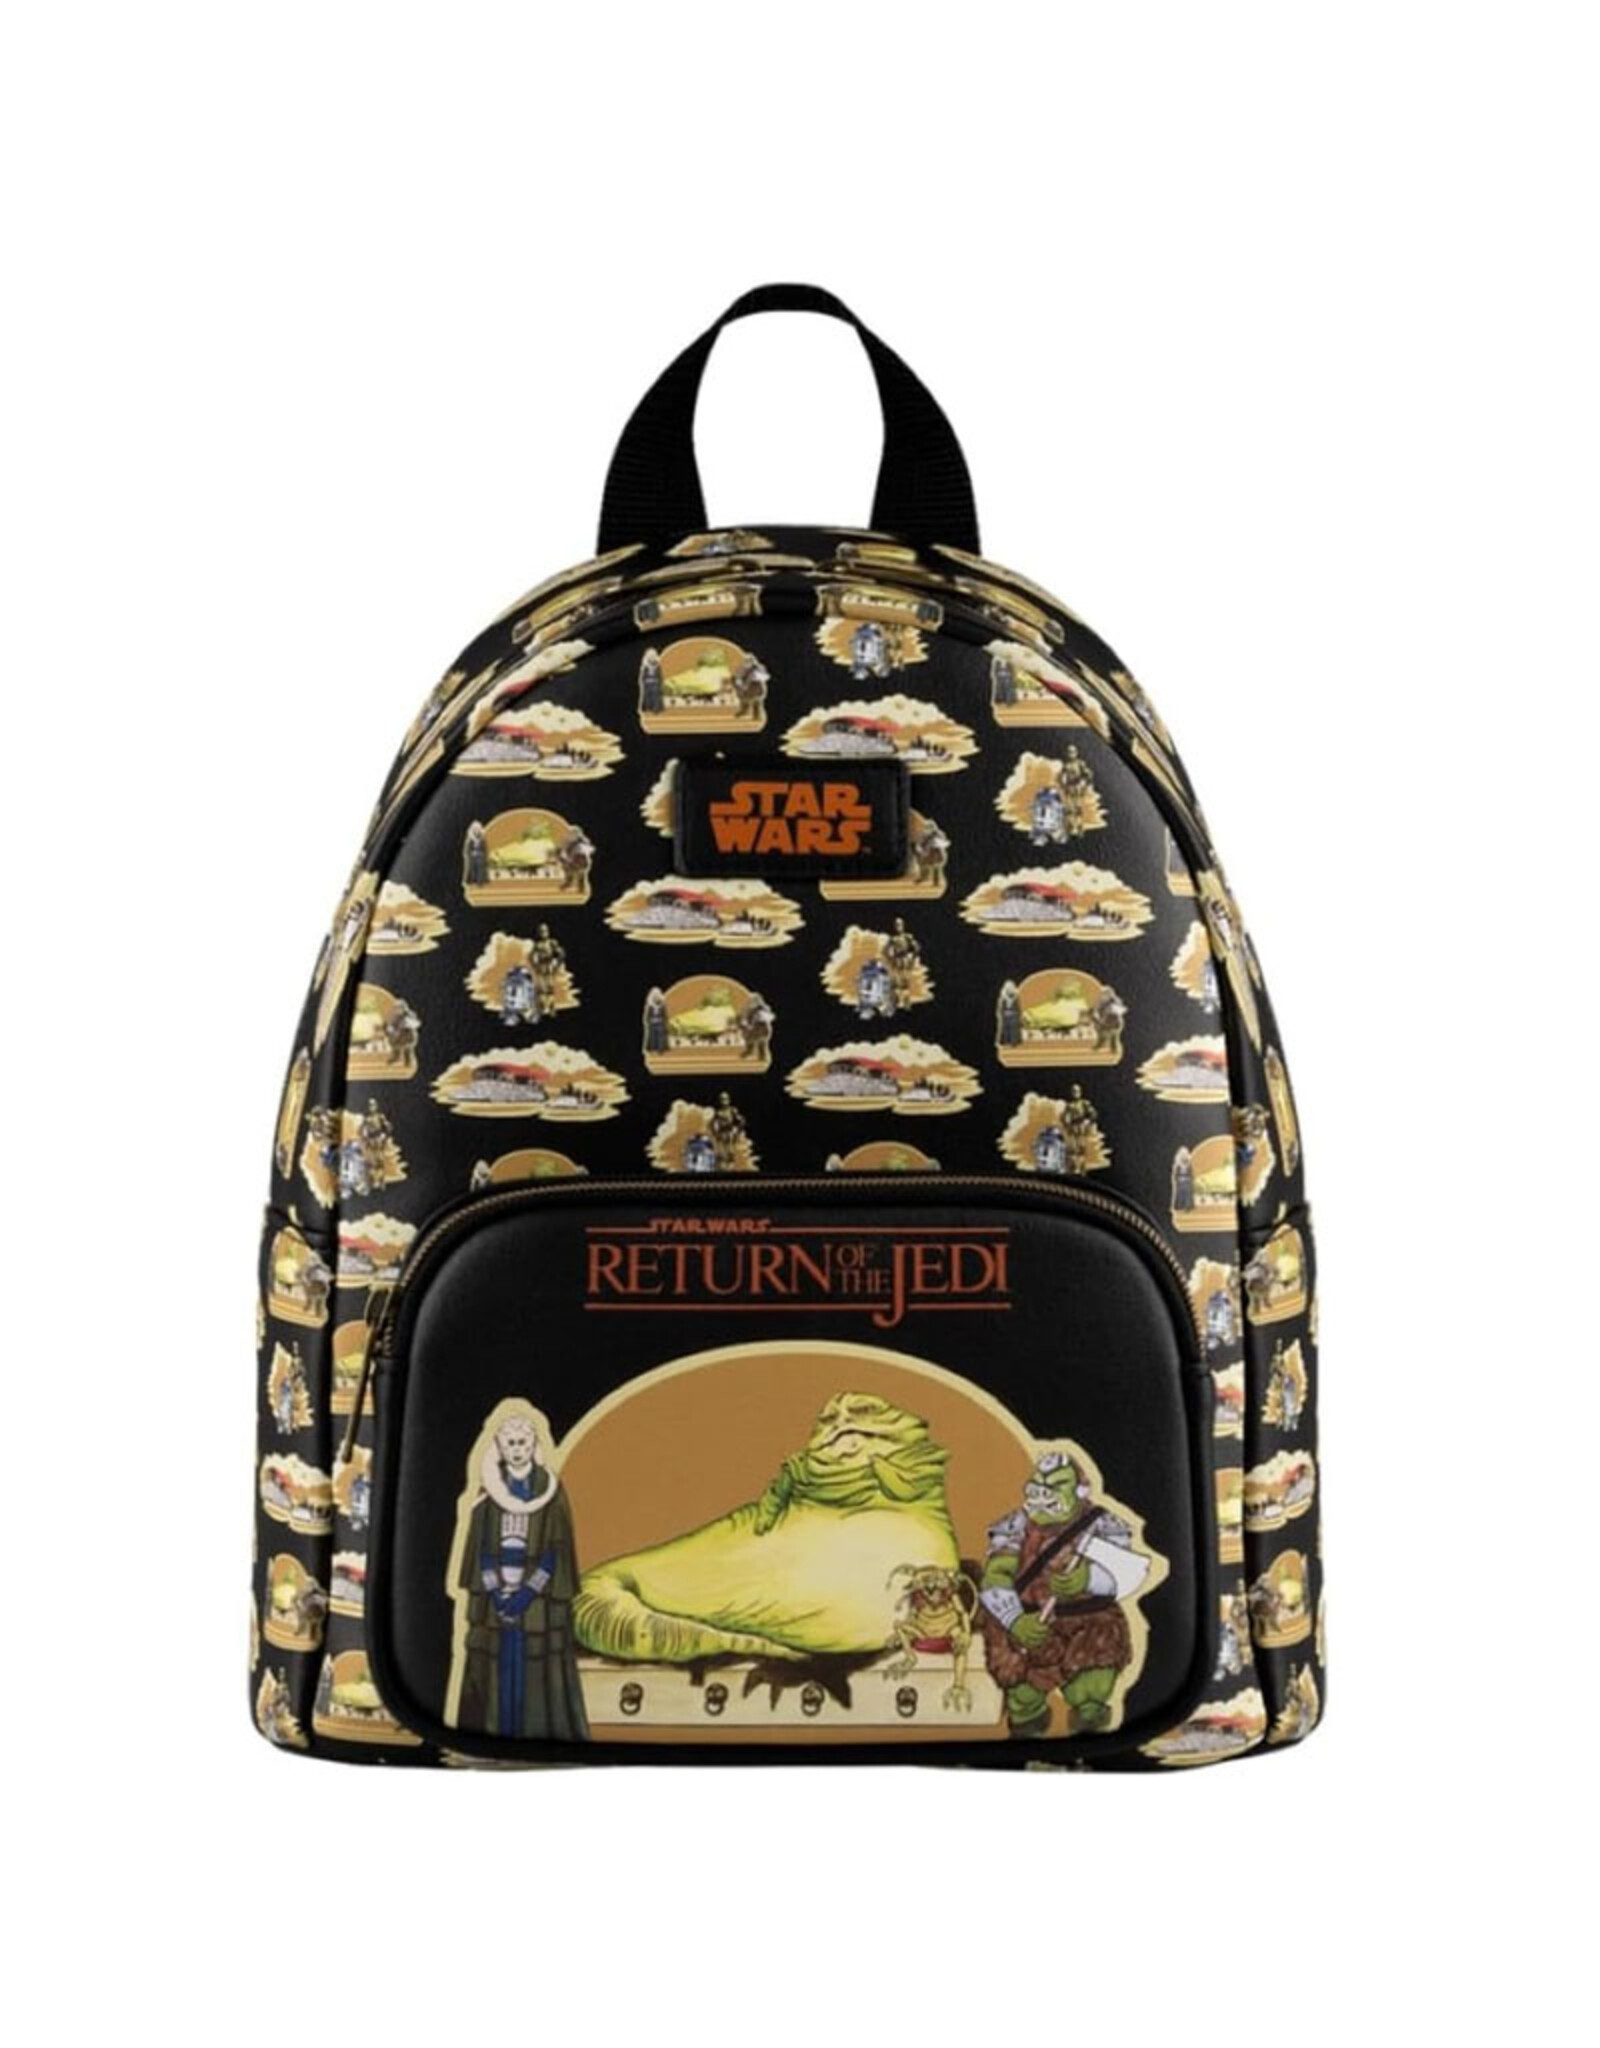 Funko Funko Star Wars Return of the Jedi: Mini Backpack